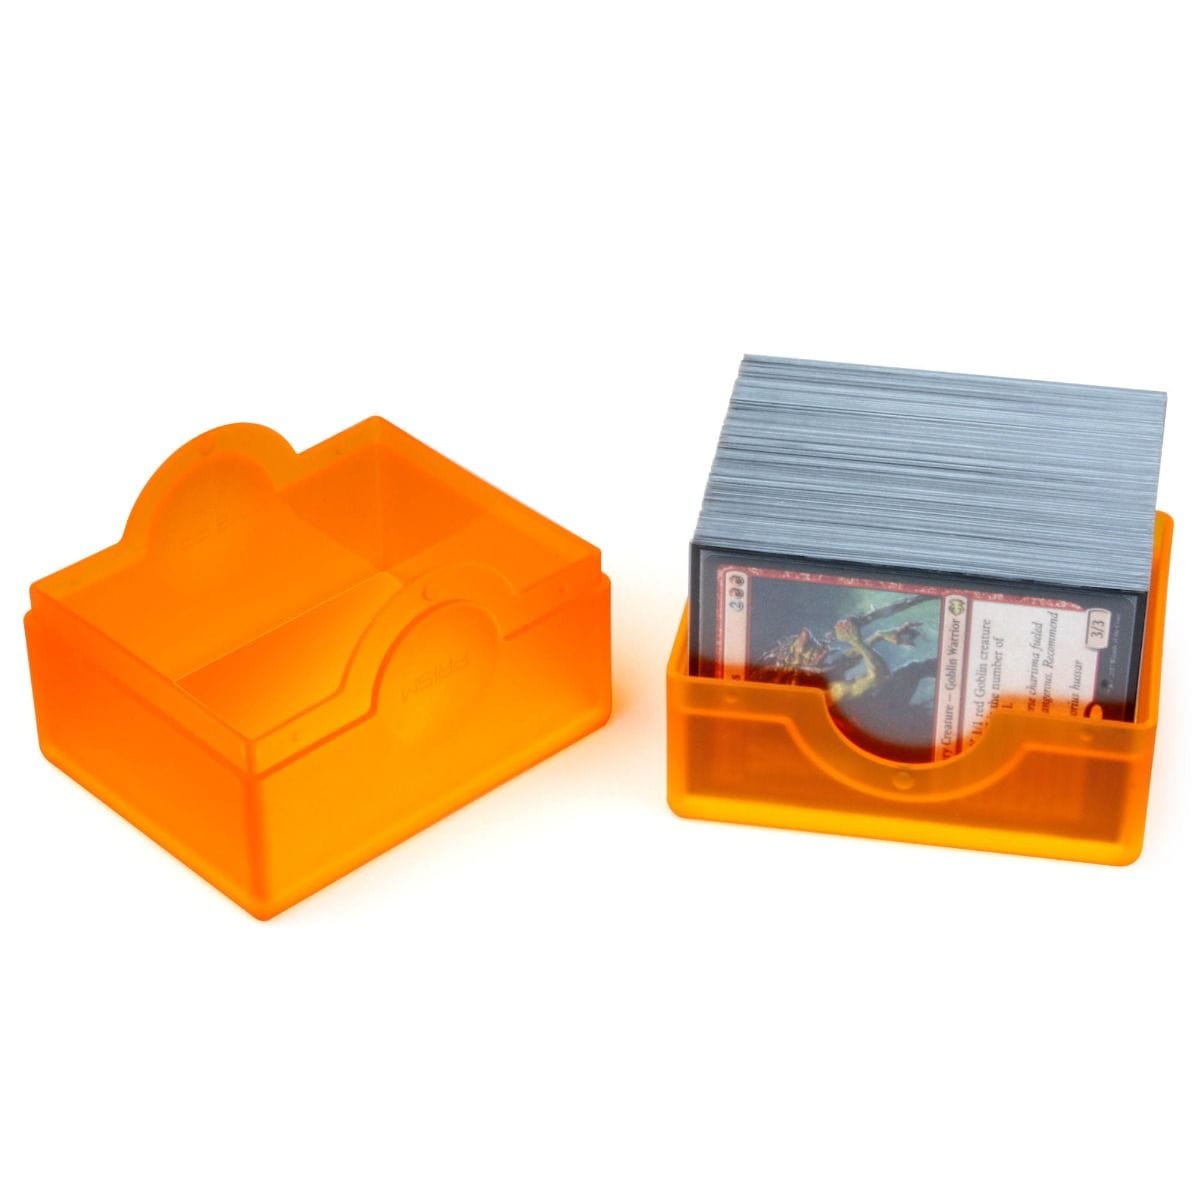 Prism Deck Case Orange - Saltire Games